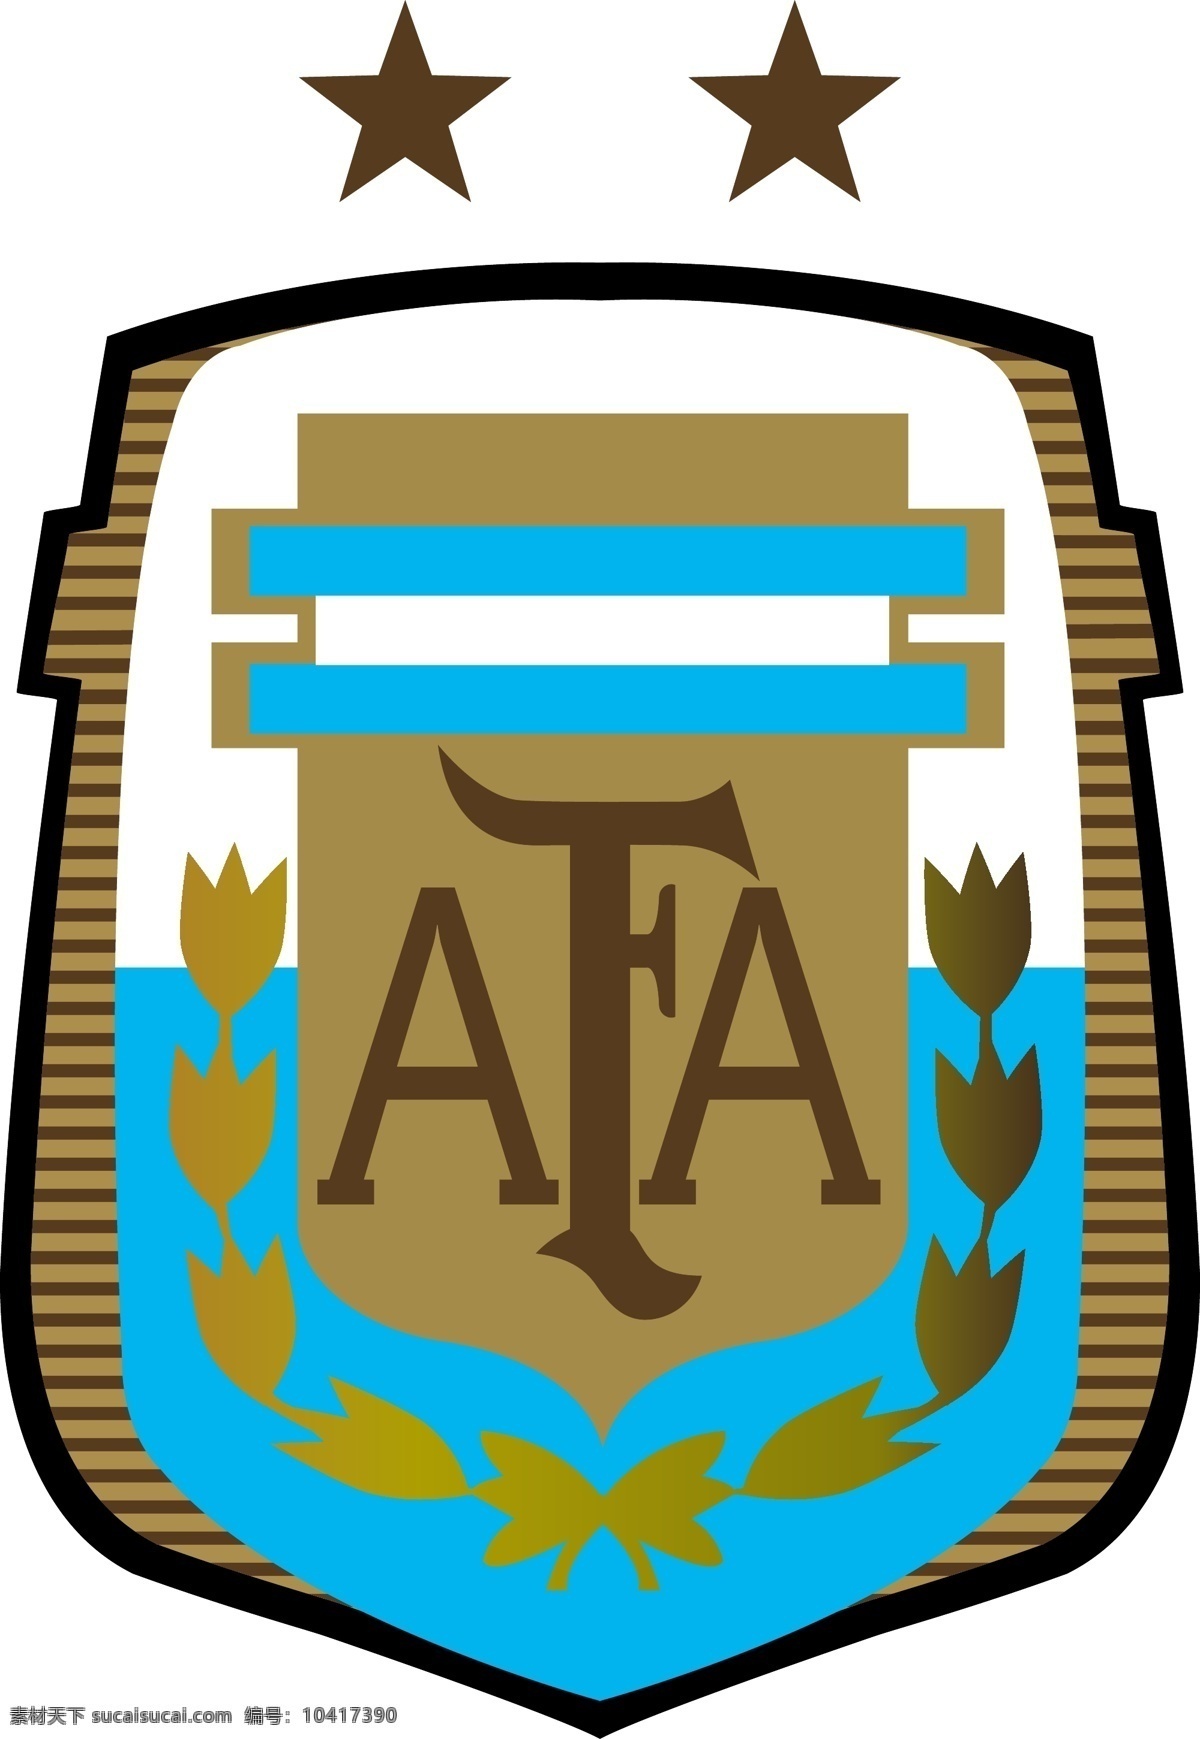 阿根廷 国家队 最新 标志 足球 南美 足协 世界杯 亚军 2014 梅西 联合会杯 马拉多纳 巴蒂斯图塔 足球标志 标志图标 公共标识标志